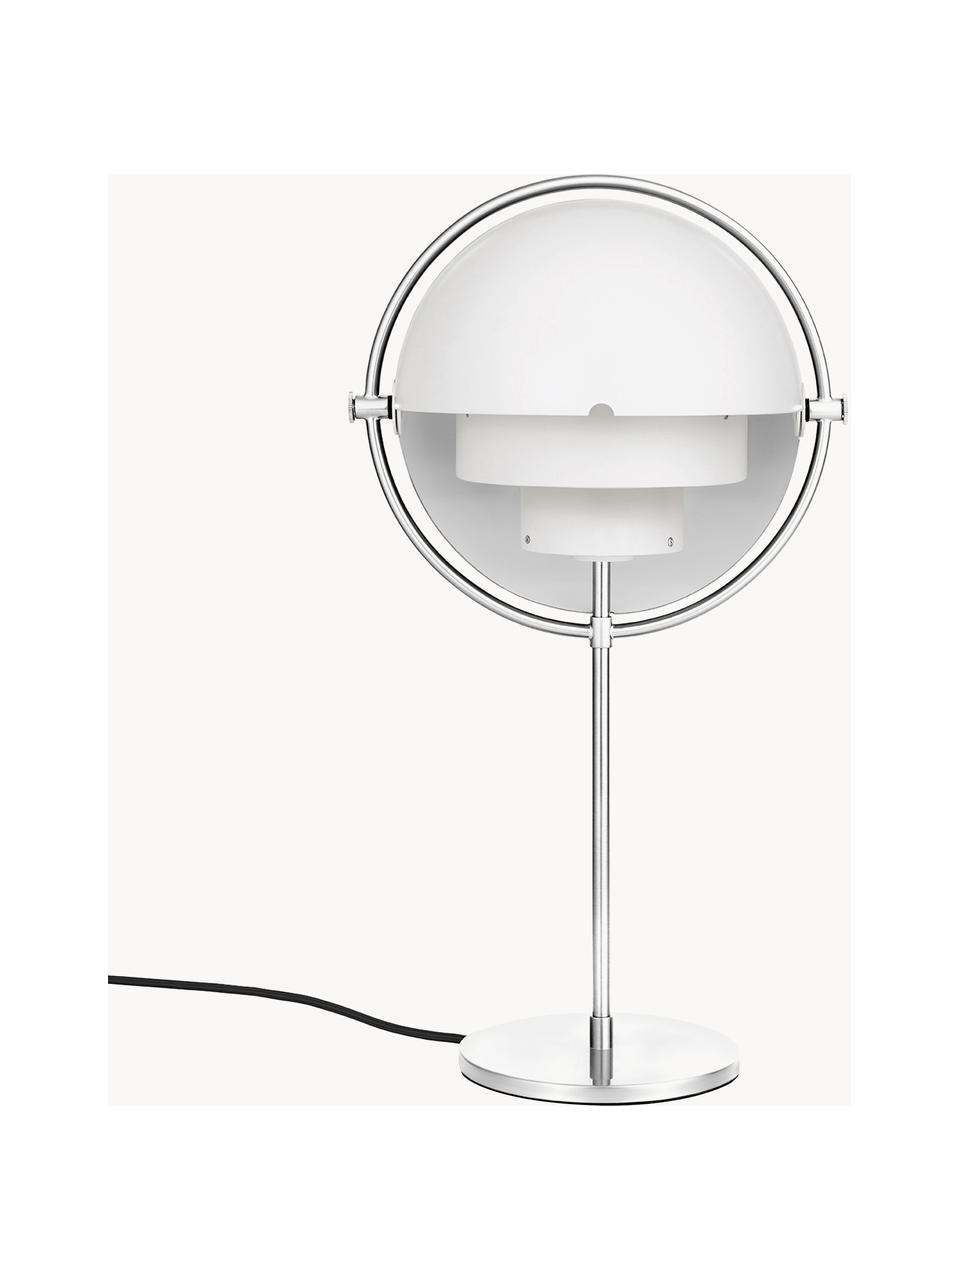 Lampada da tavolo orientabile grande Multi-Lite, Alluminio rivestito, Bianco opaco, argentato lucido, Ø 24 x Alt. 50 cm